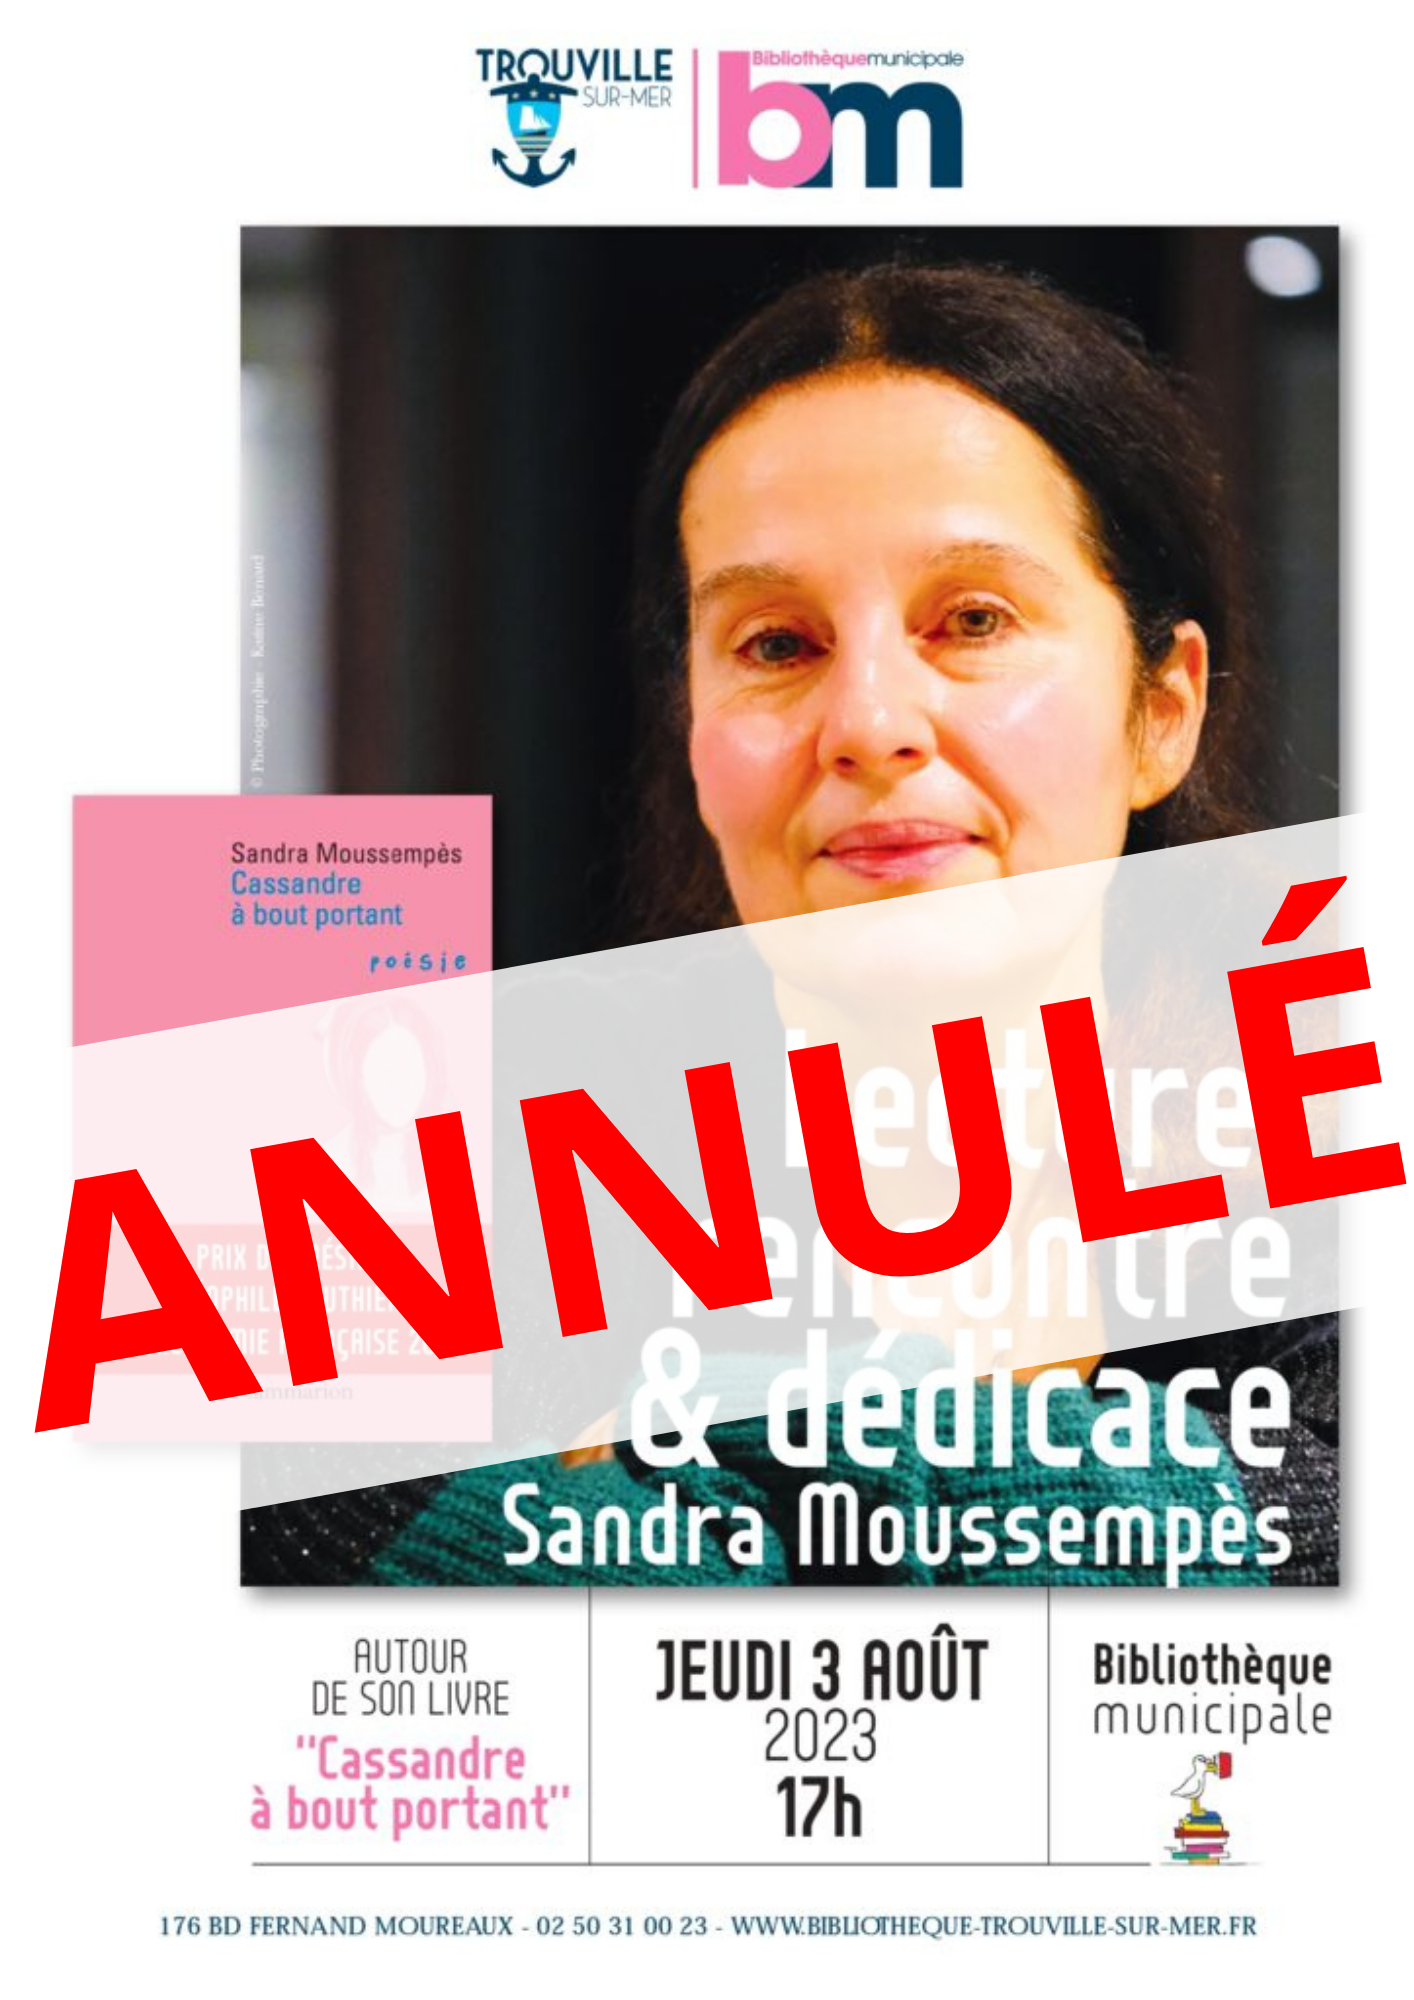 ÉVÈNEMENT ANNULÉ Lecture, rencontre & dédicace de Sandra Moussempès